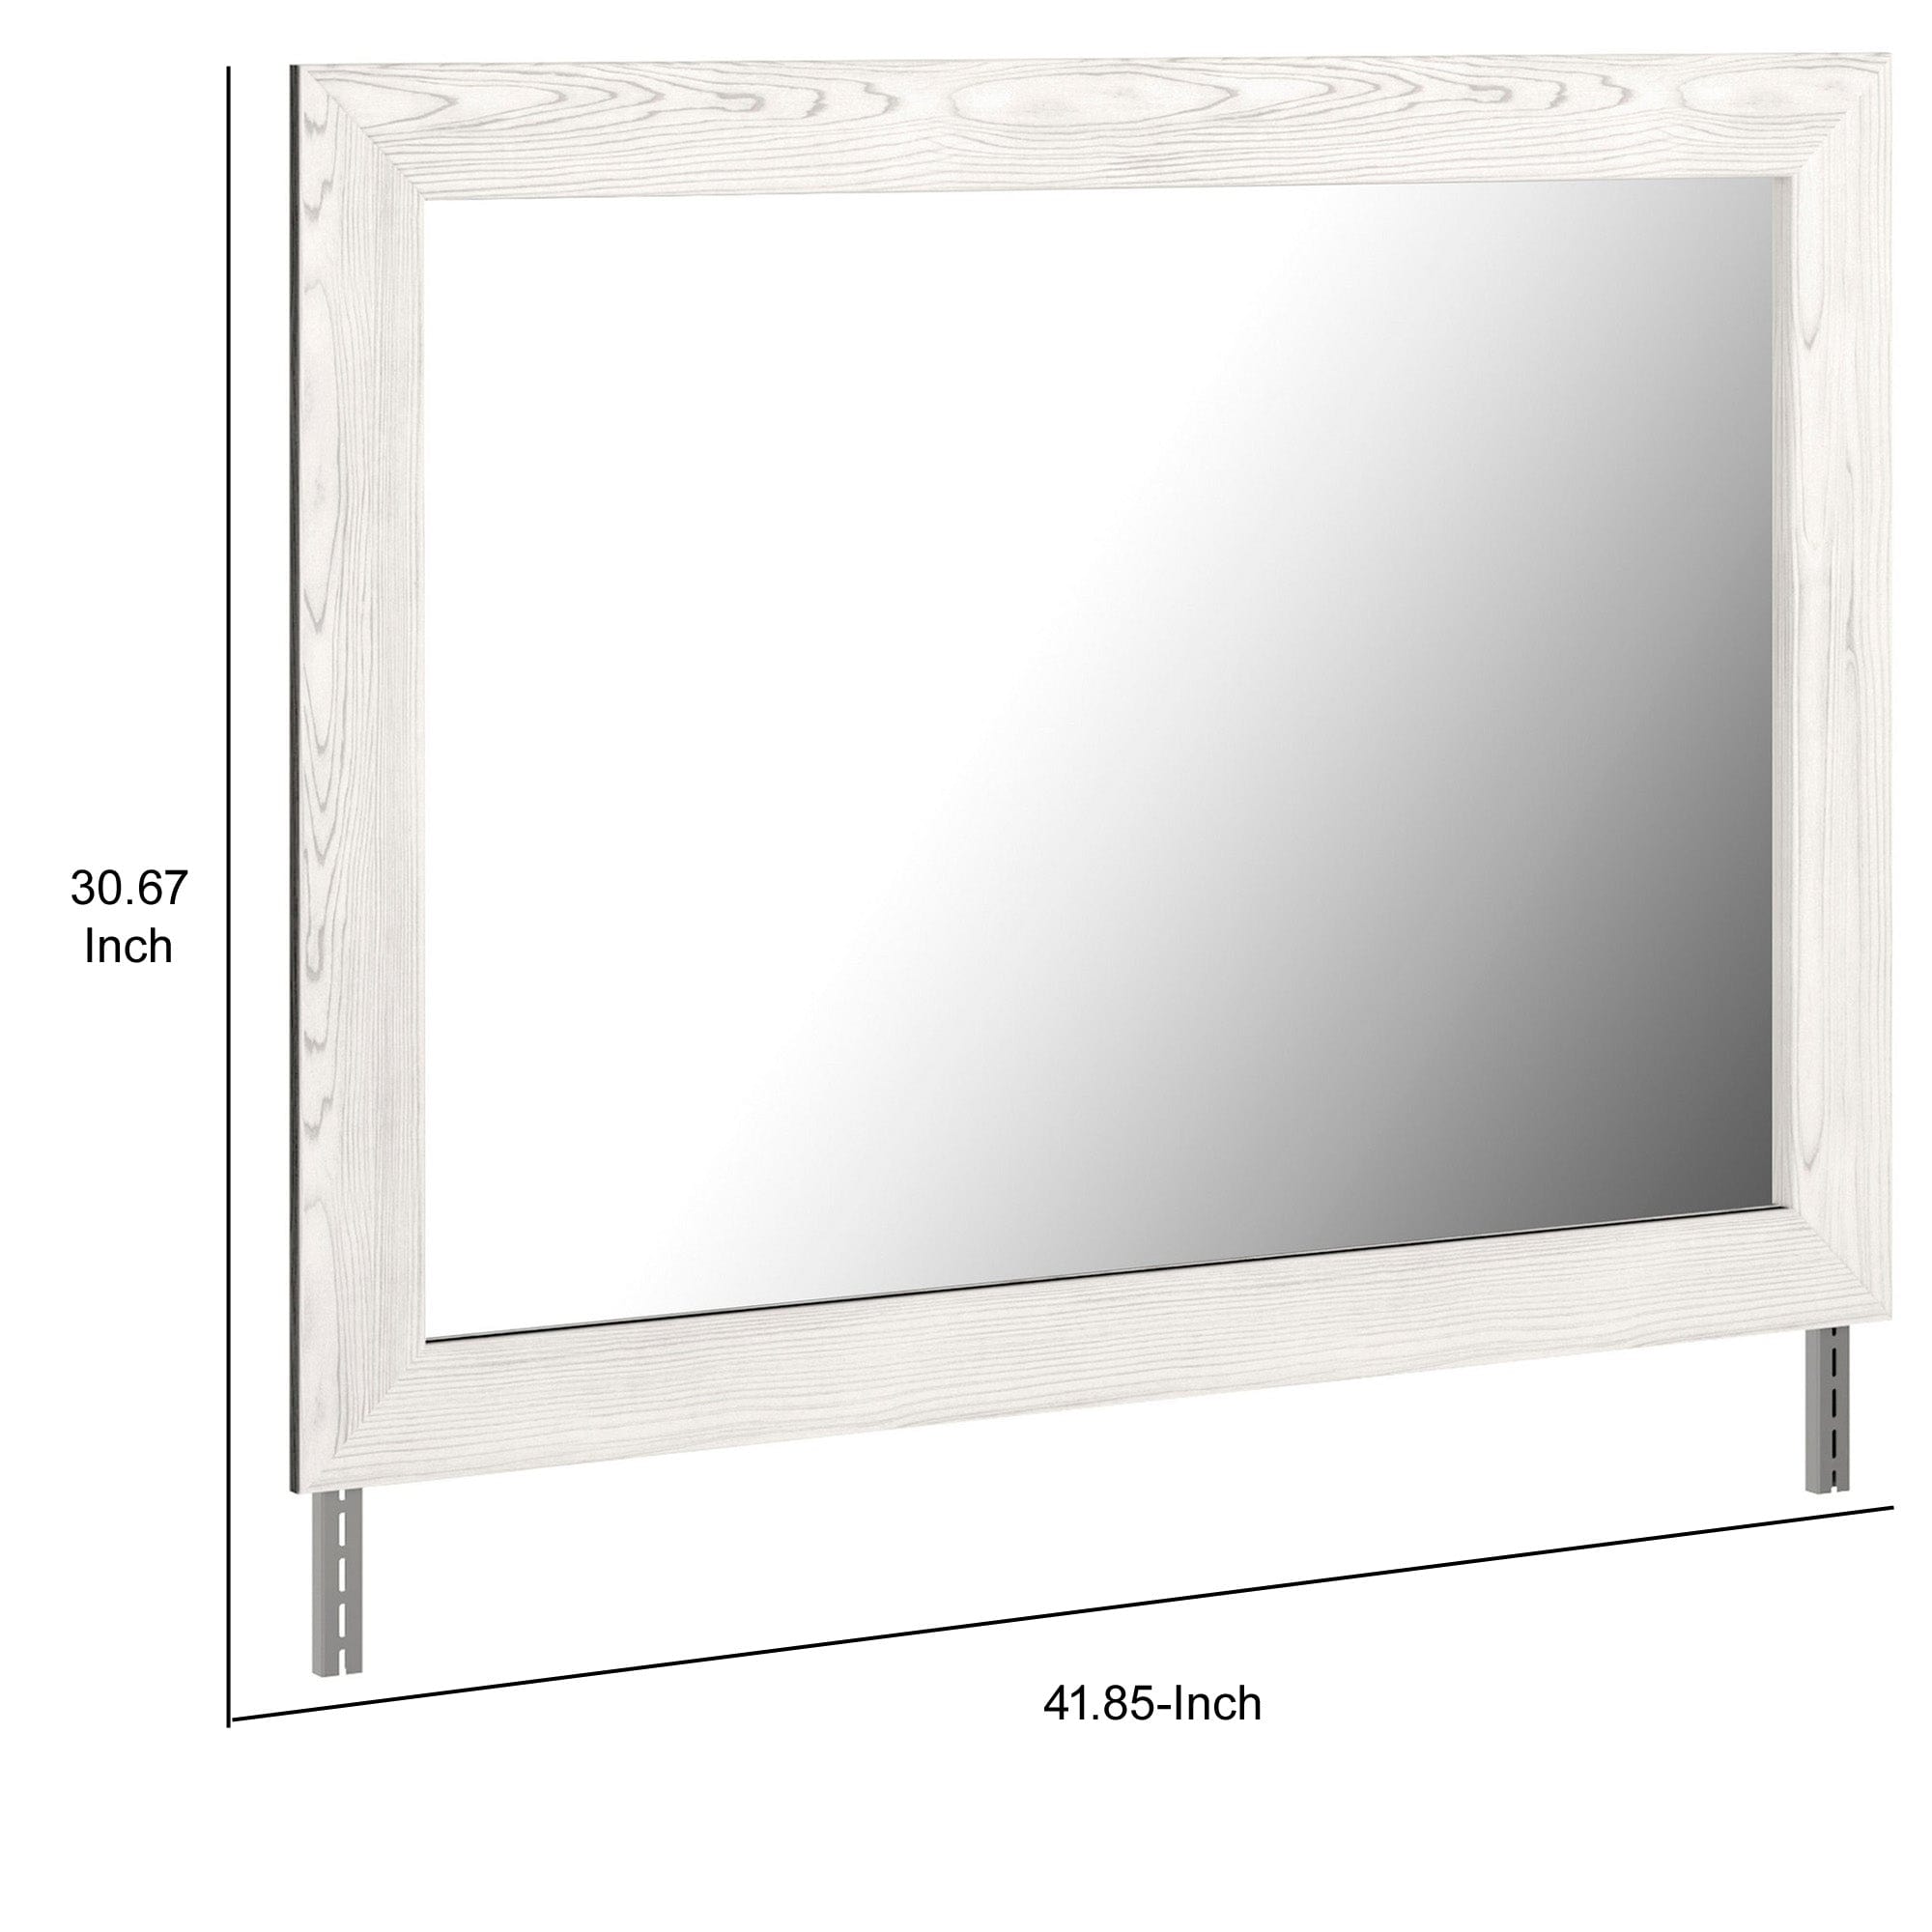 Benzara Rectangular Wooden Bedroom Mirror With Grain Details, Gray By Benzara Mirrors BM232923